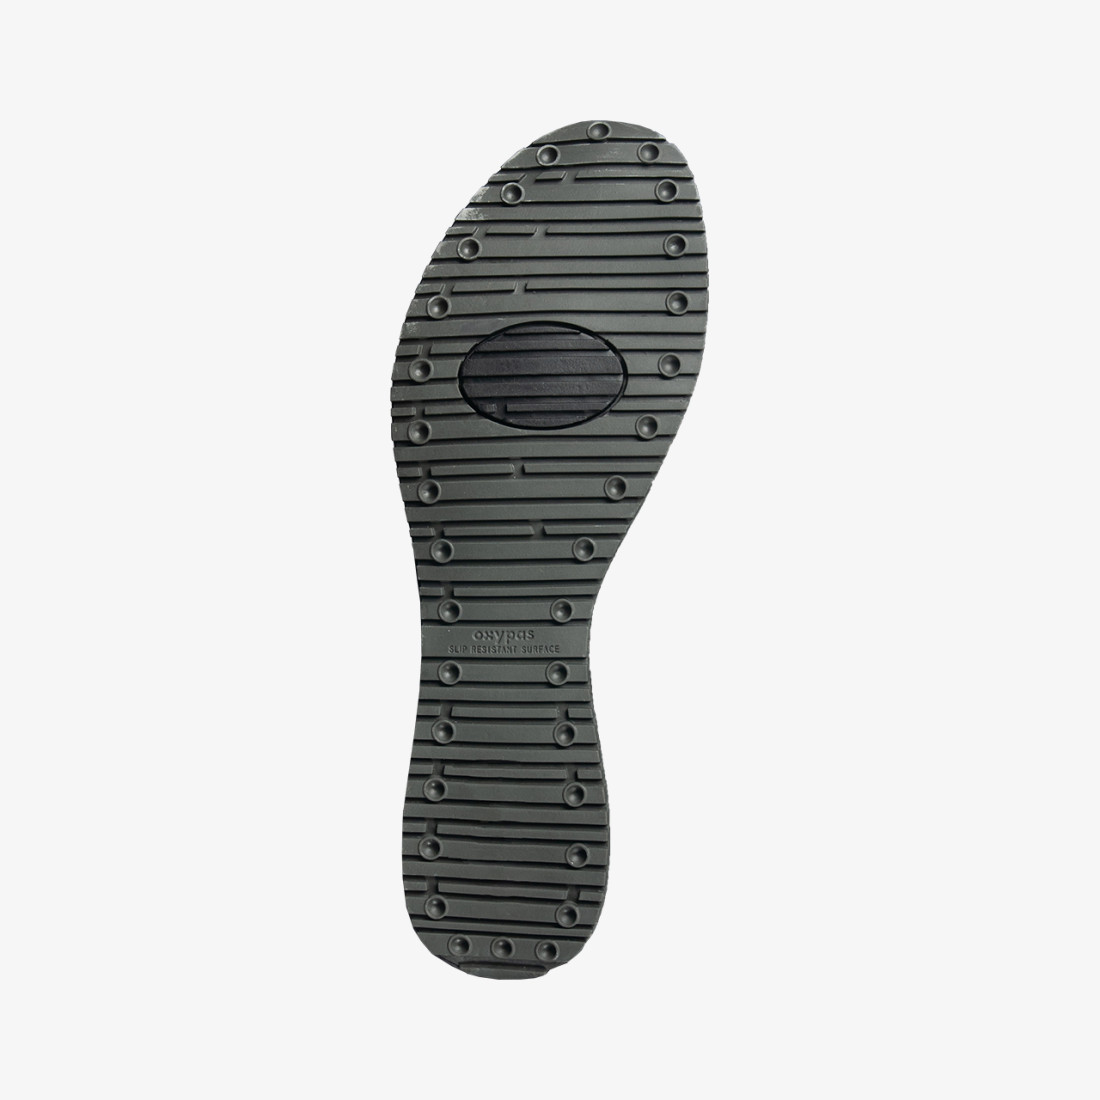 Adidasi EVAN O1 - Incaltaminte de protectie | Bocanci, Pantofi, Sandale, Cizme